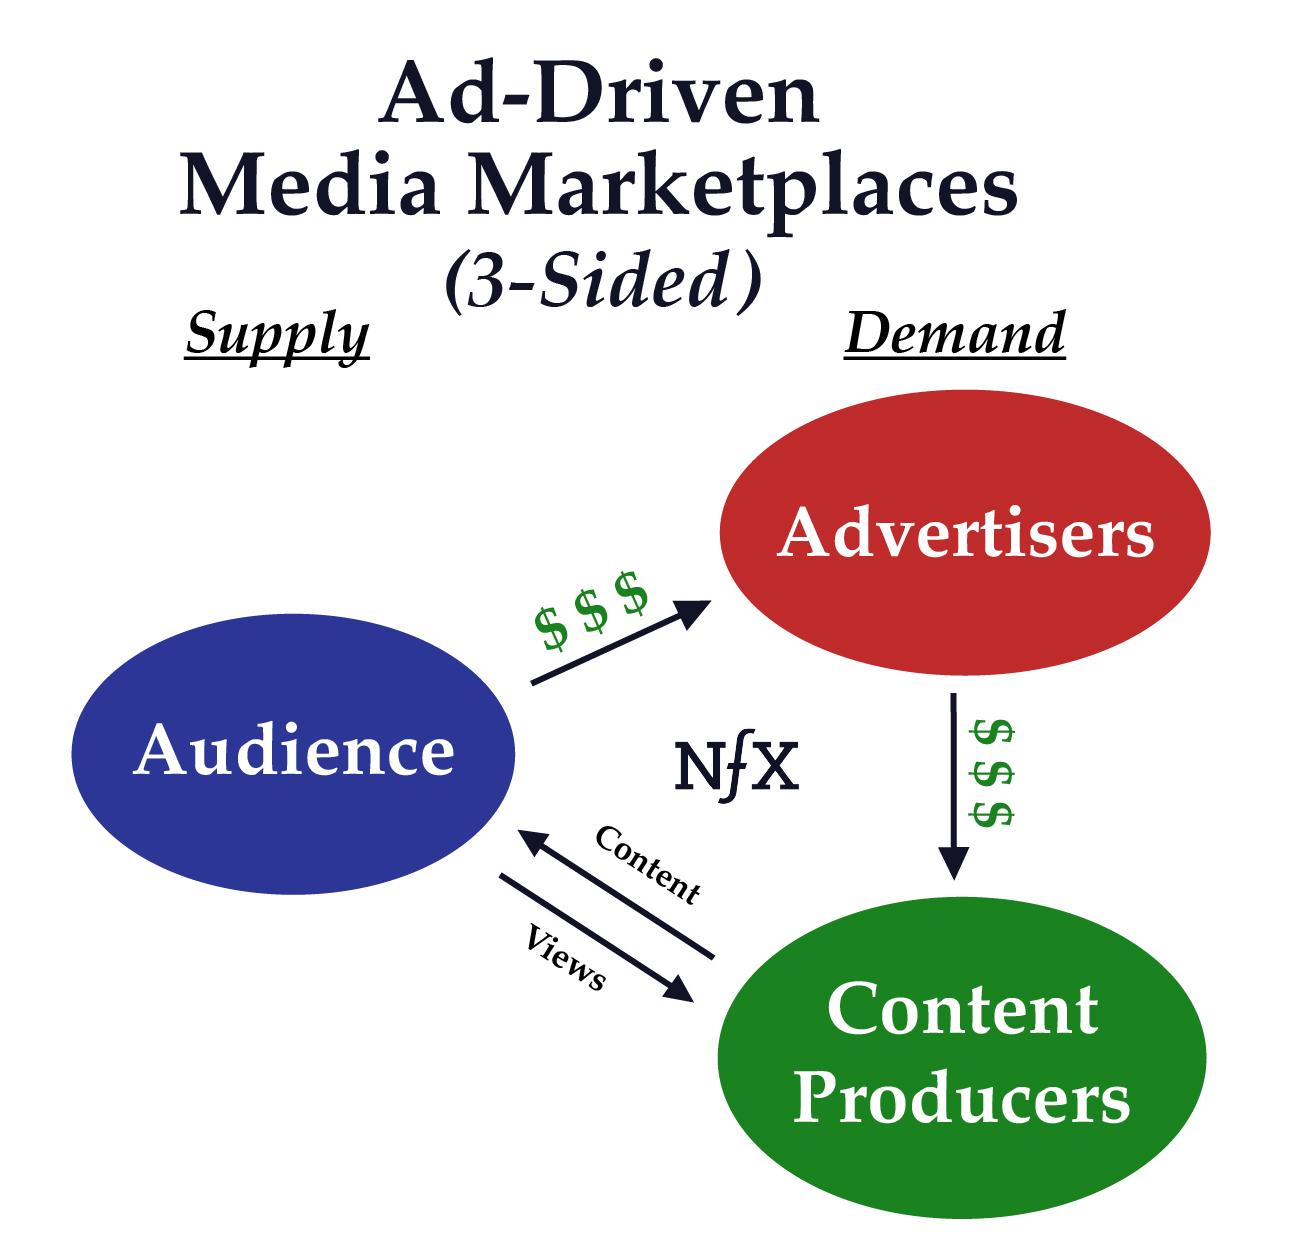 Ad-Driven Media Marketplaces